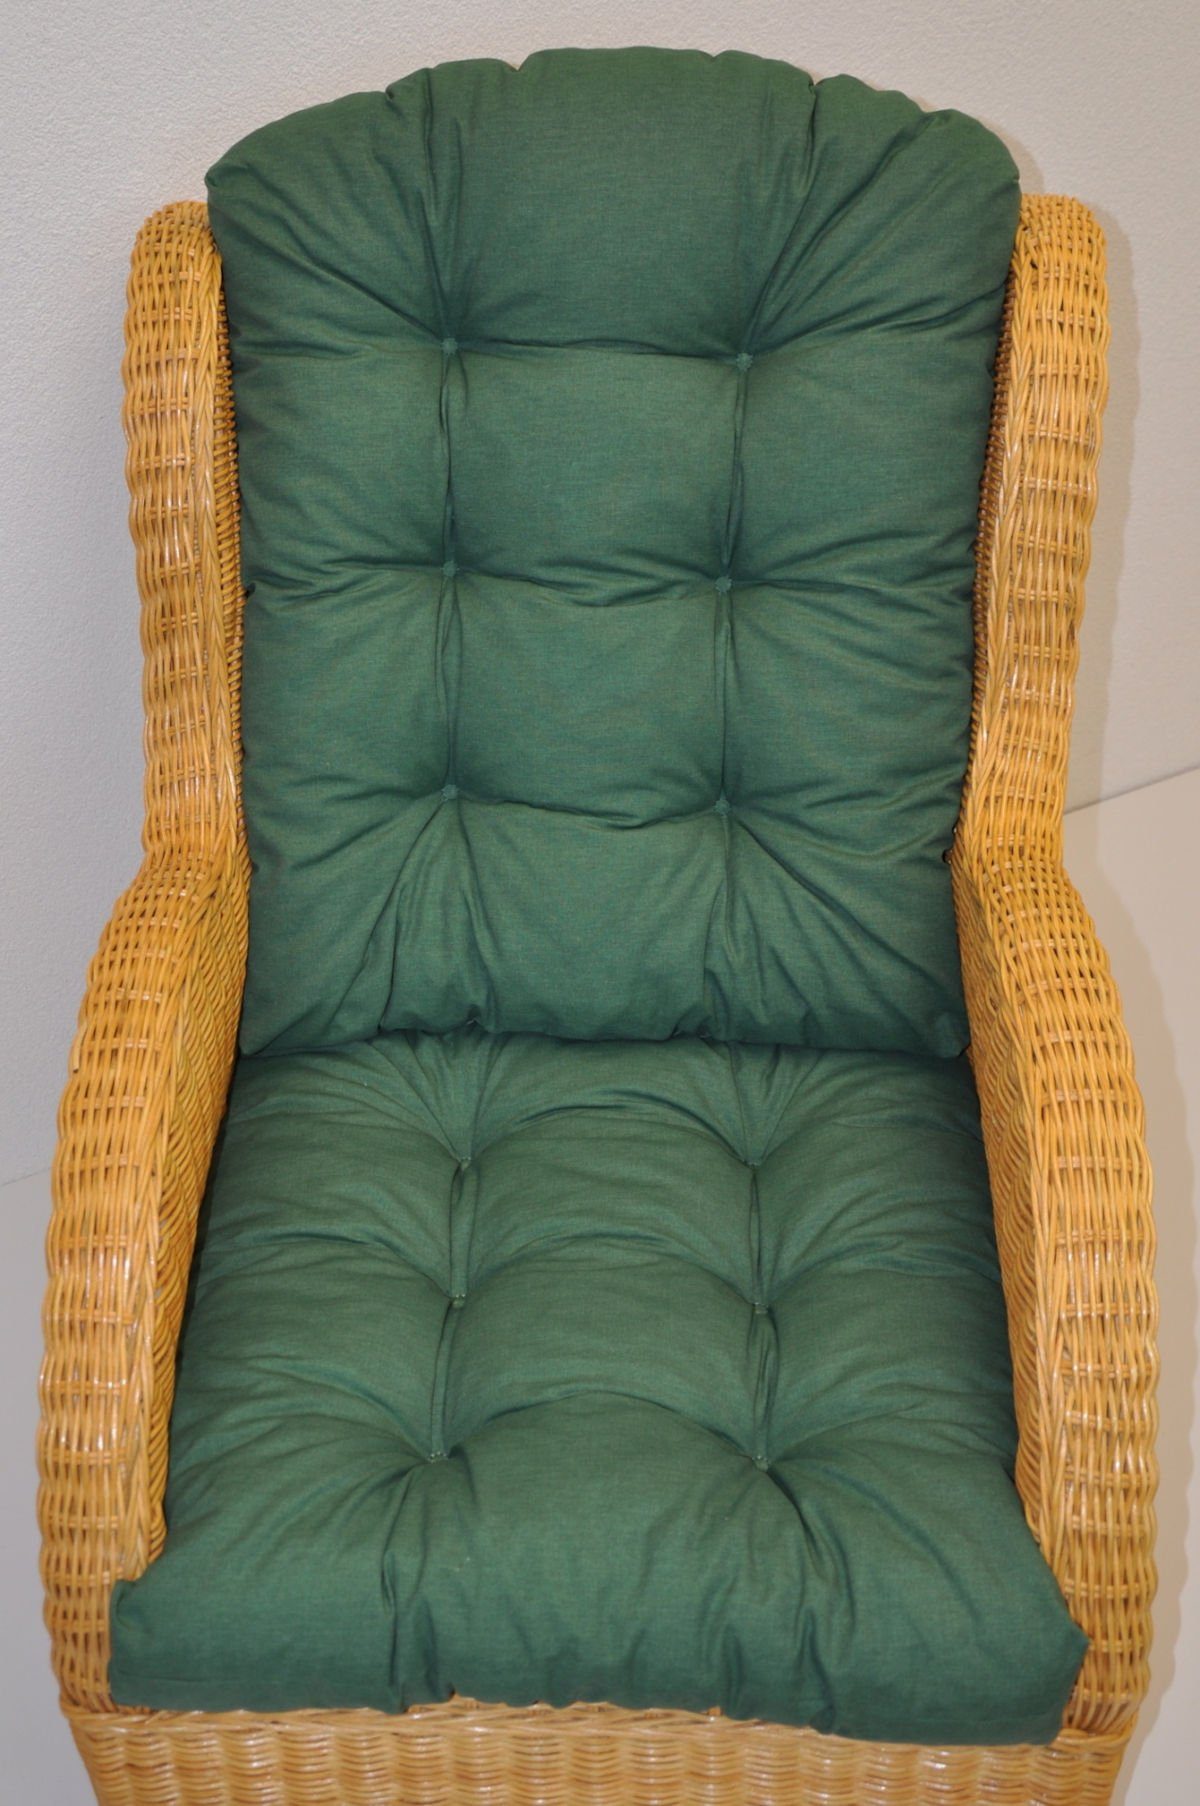 Color Kissen Rattani Sesselauflage für Rattansessel, Rattan Ohrensessel Polster dunkelgrün